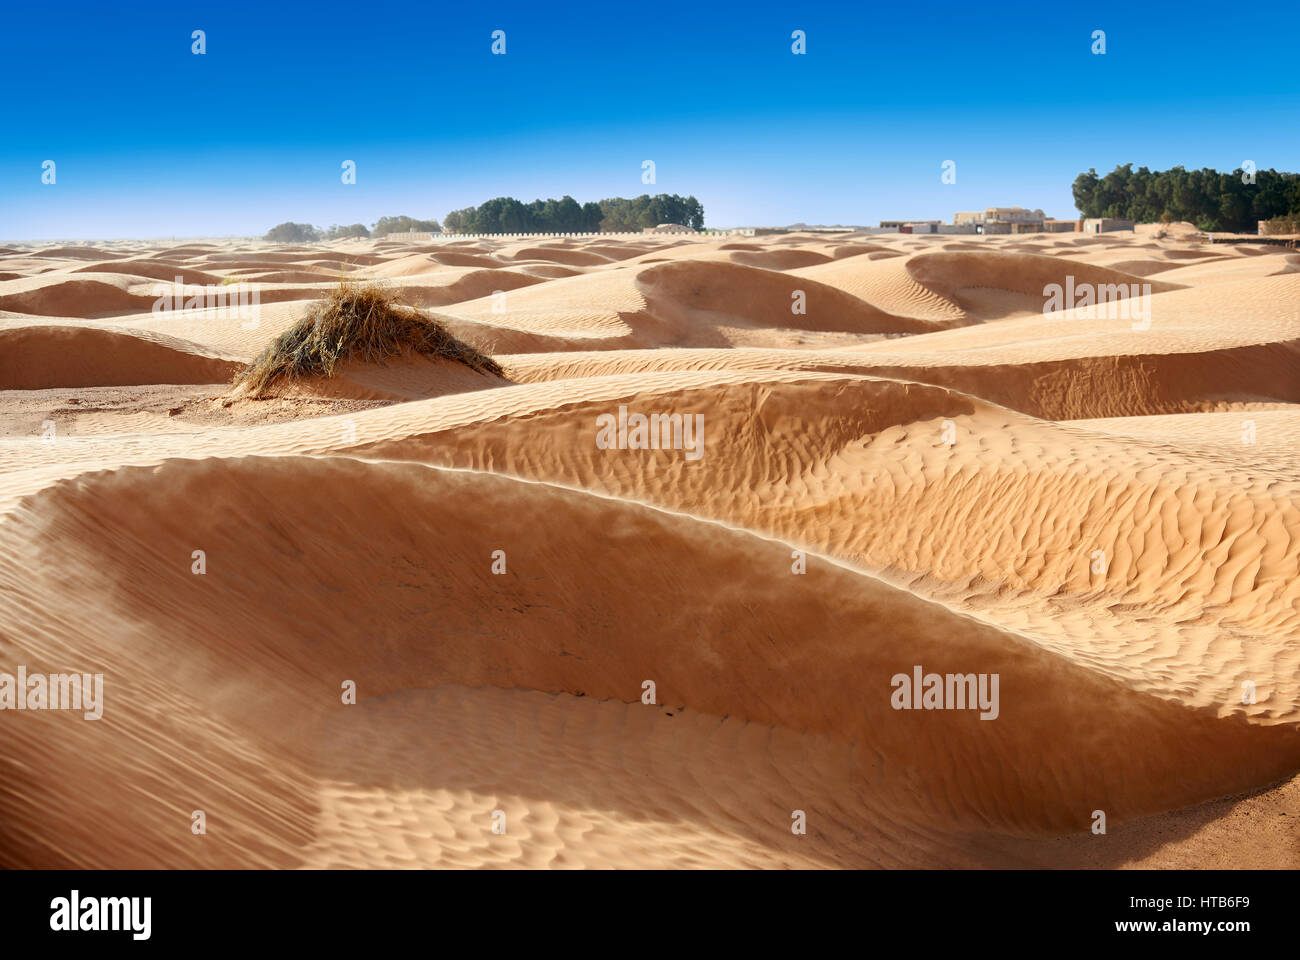 Il deserto del Sahara dune di sabbia di Erg Orientale nei pressi dell'oasi di Ksar Ghilane, Tunisia, Africa Foto Stock